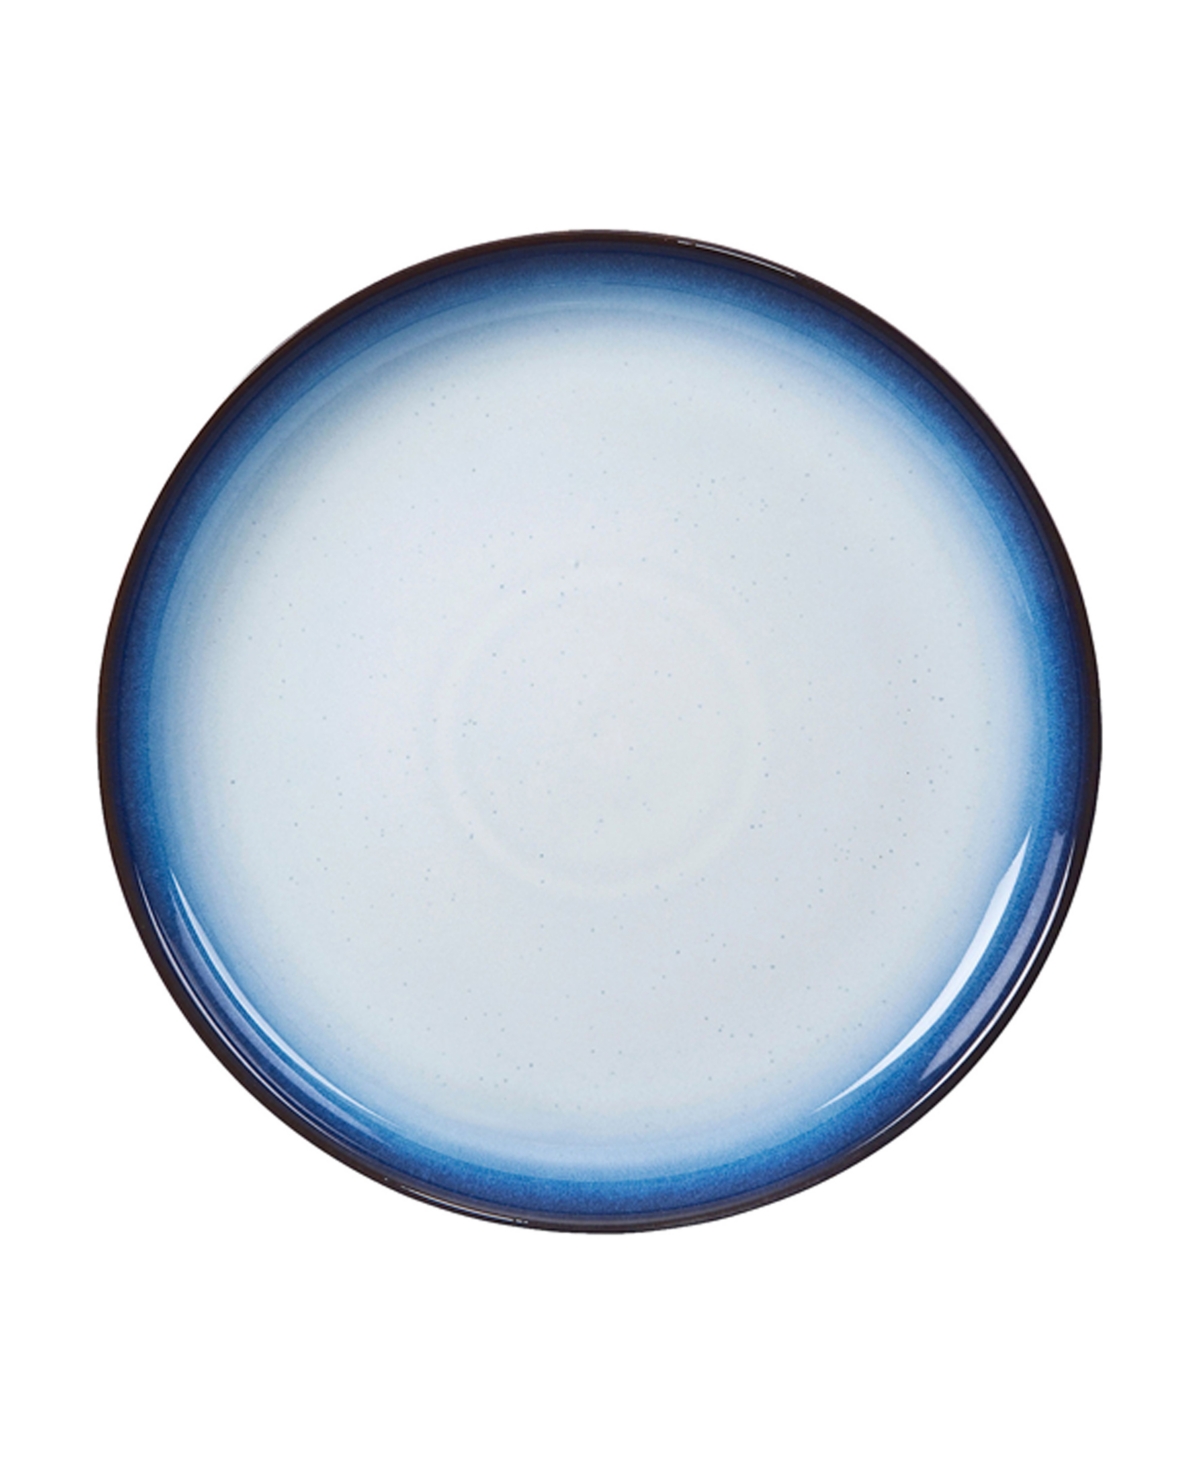 Blue Haze Dinner Plate - Blue, White